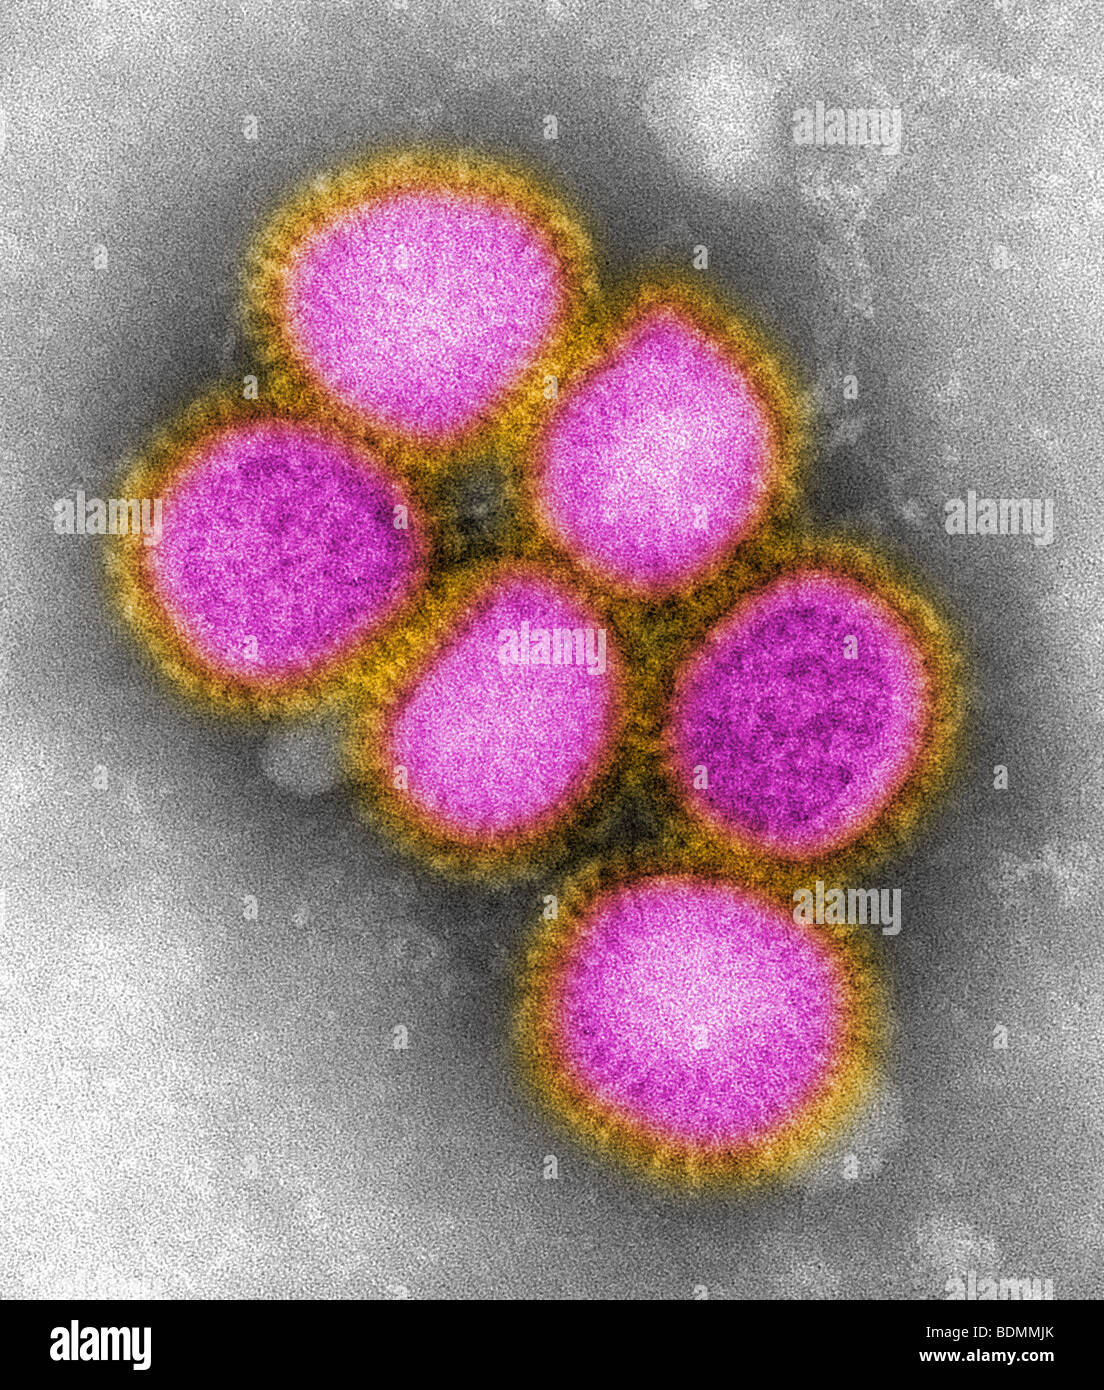 Imágenes de la reciente identificación de gripe H1N1 Foto de stock